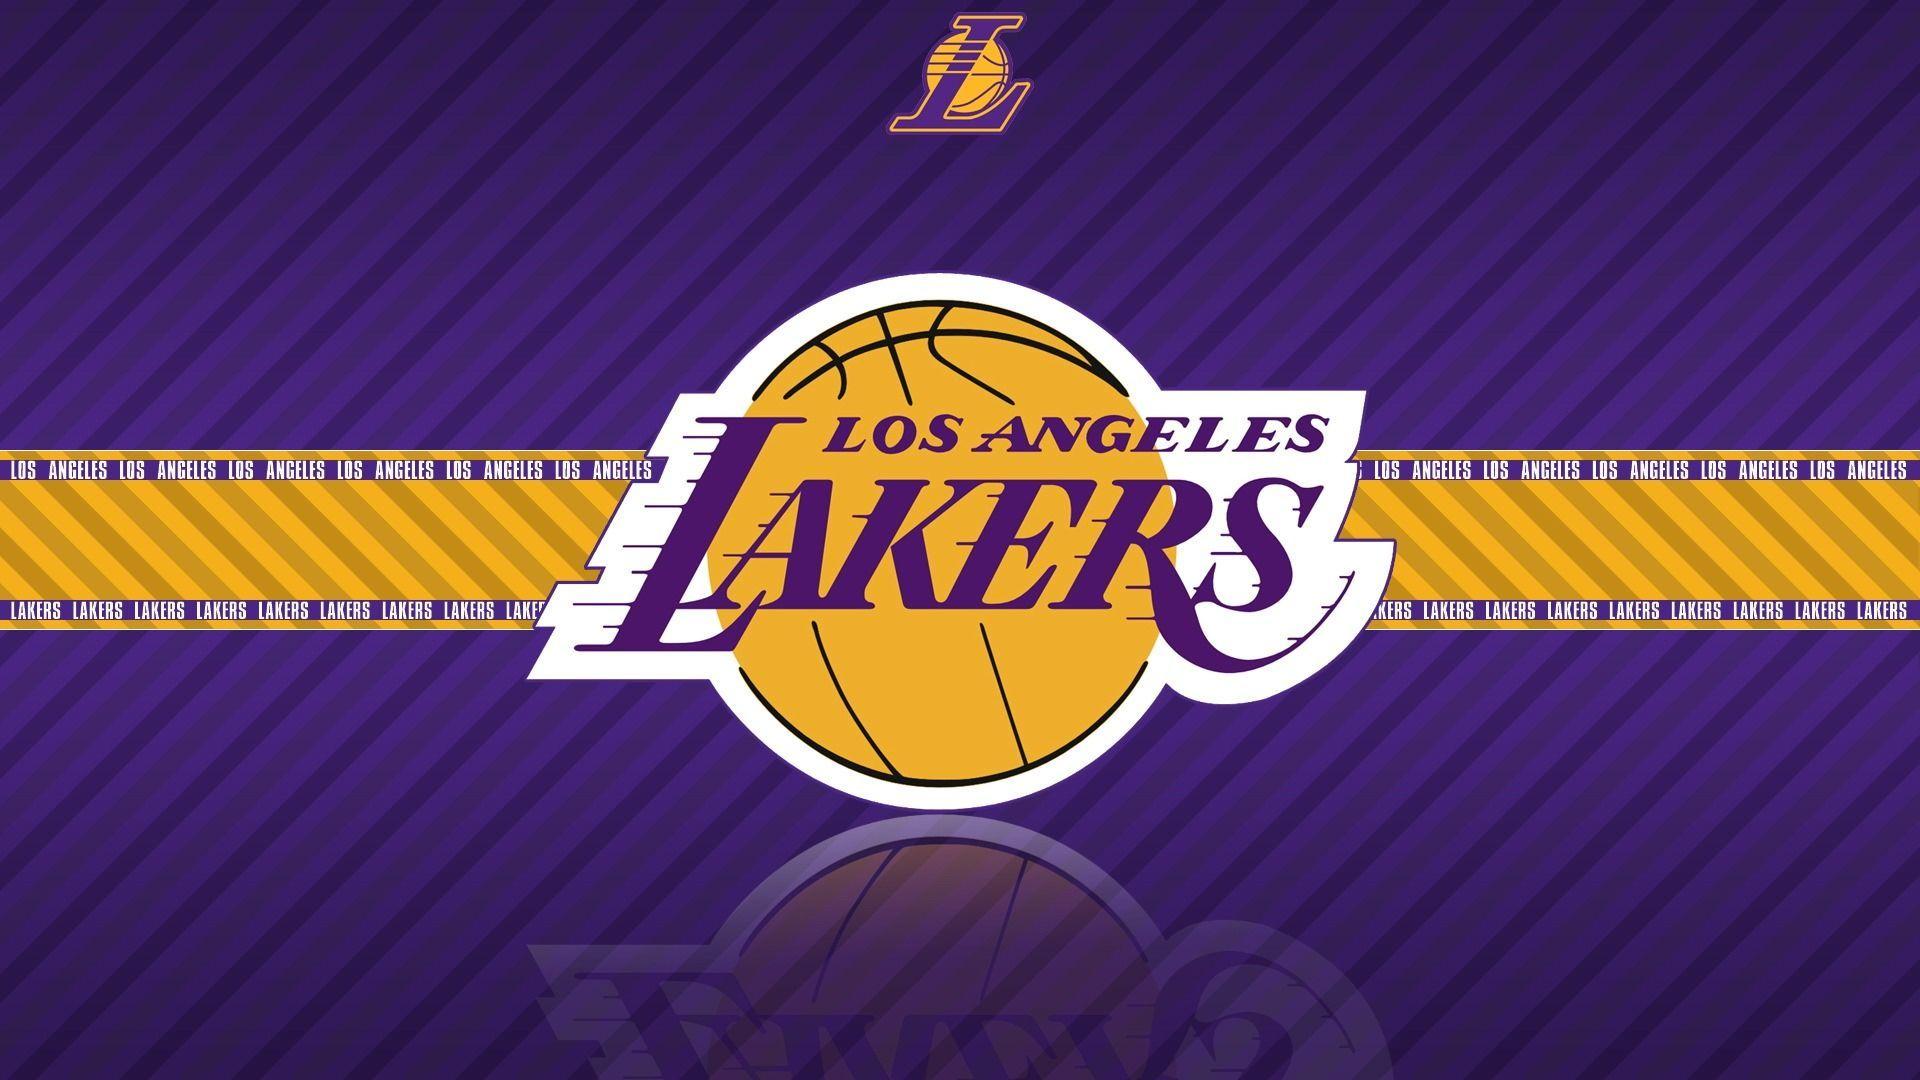 La Lakers Cool Wallpaper Wallpaper HD. Lakers wallpaper, Lakers logo, Los angeles lakers